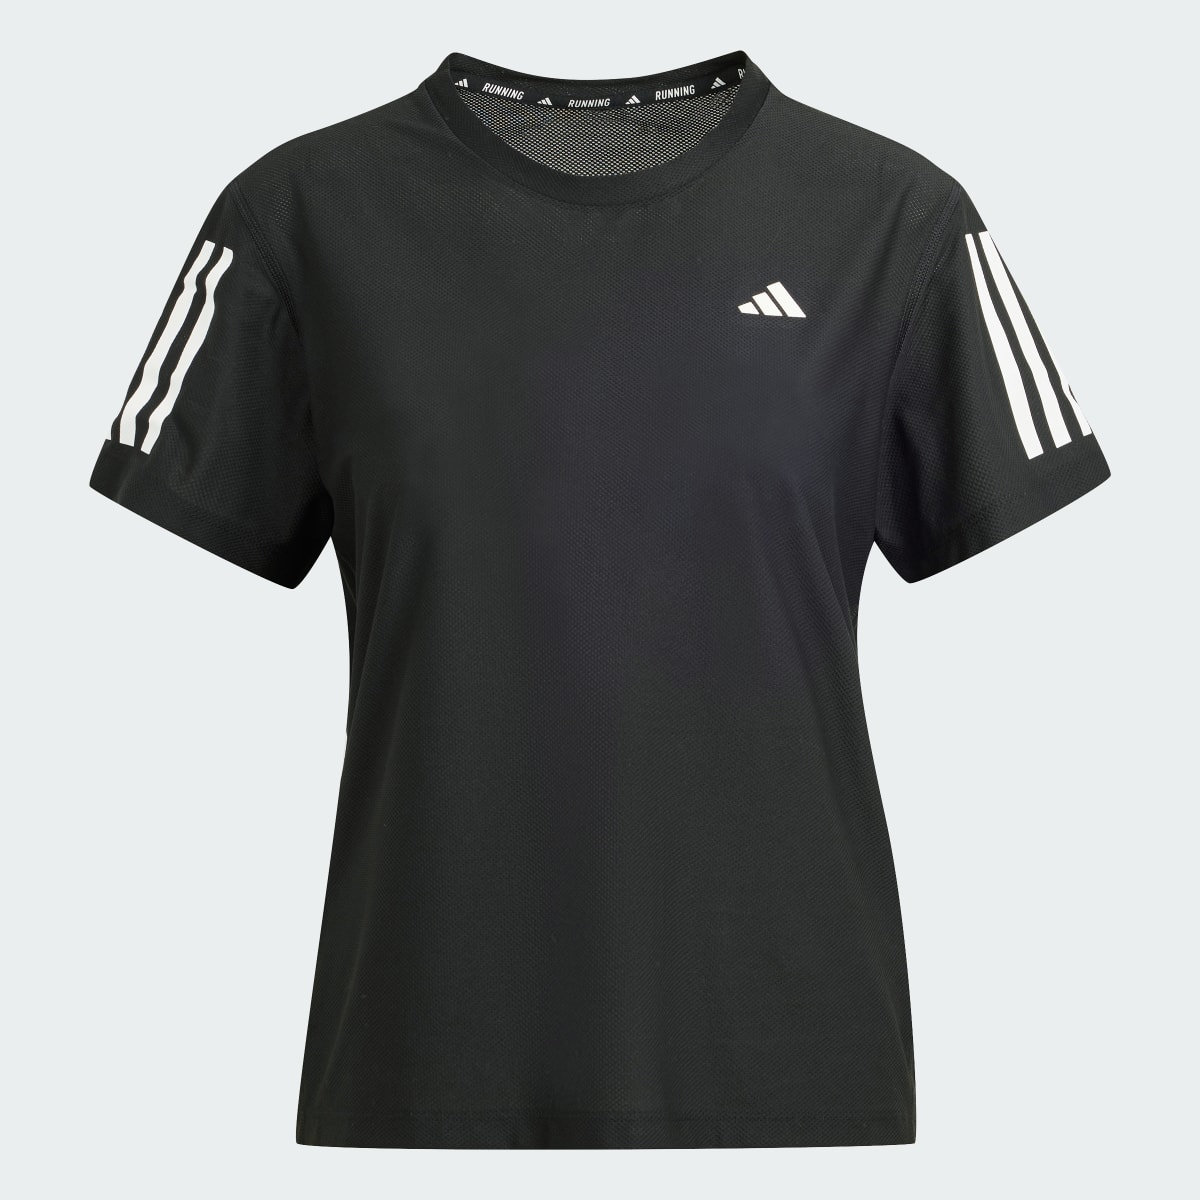 Adidas T-shirt Own The Run. 5